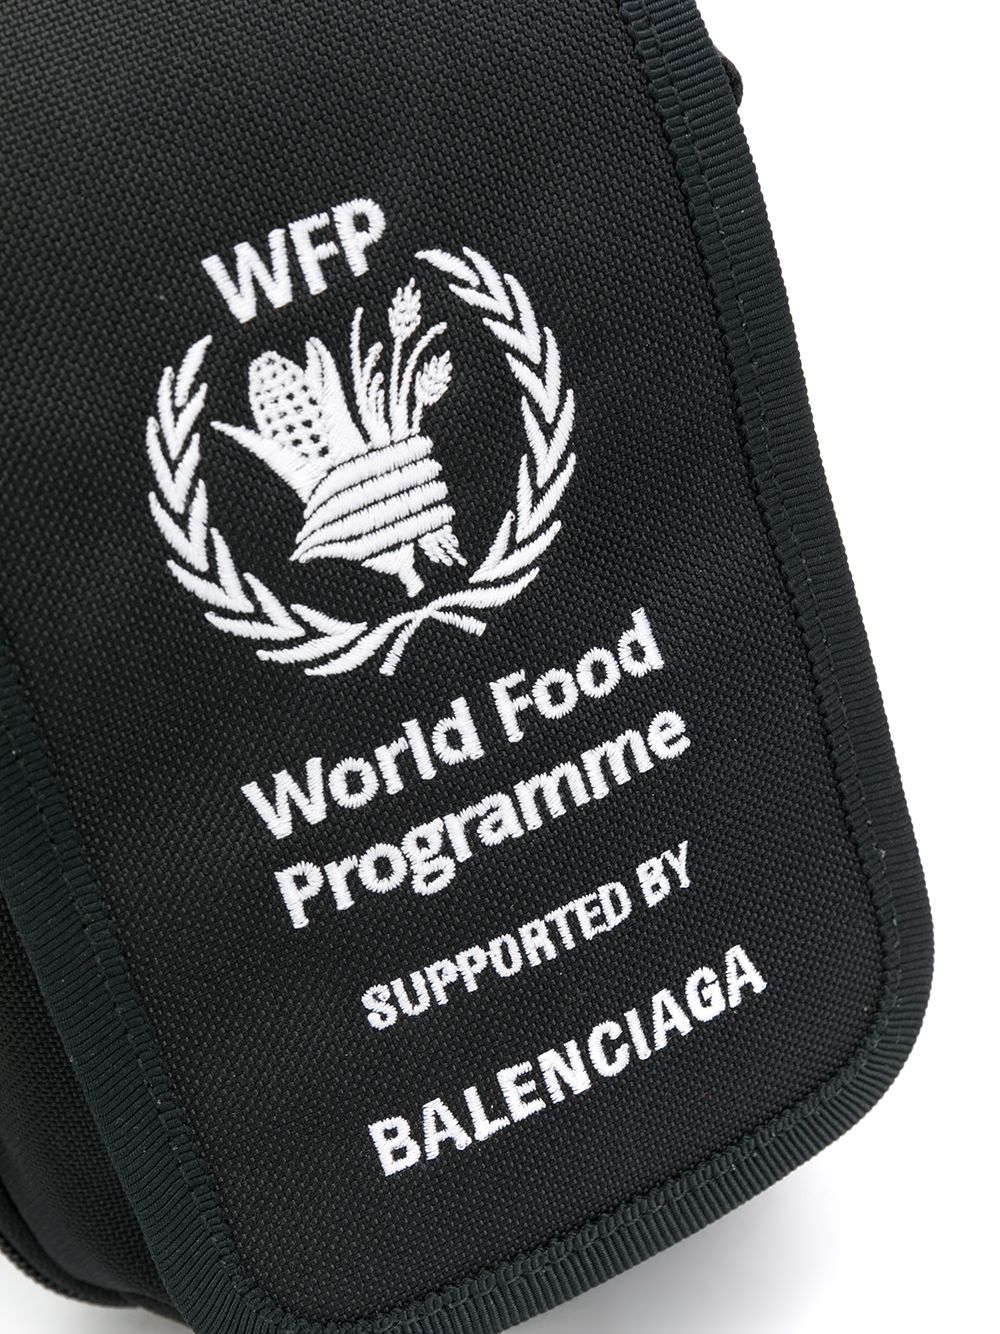 фото Balenciaga сумка-мессенджер explorer с вышивкой world food programme